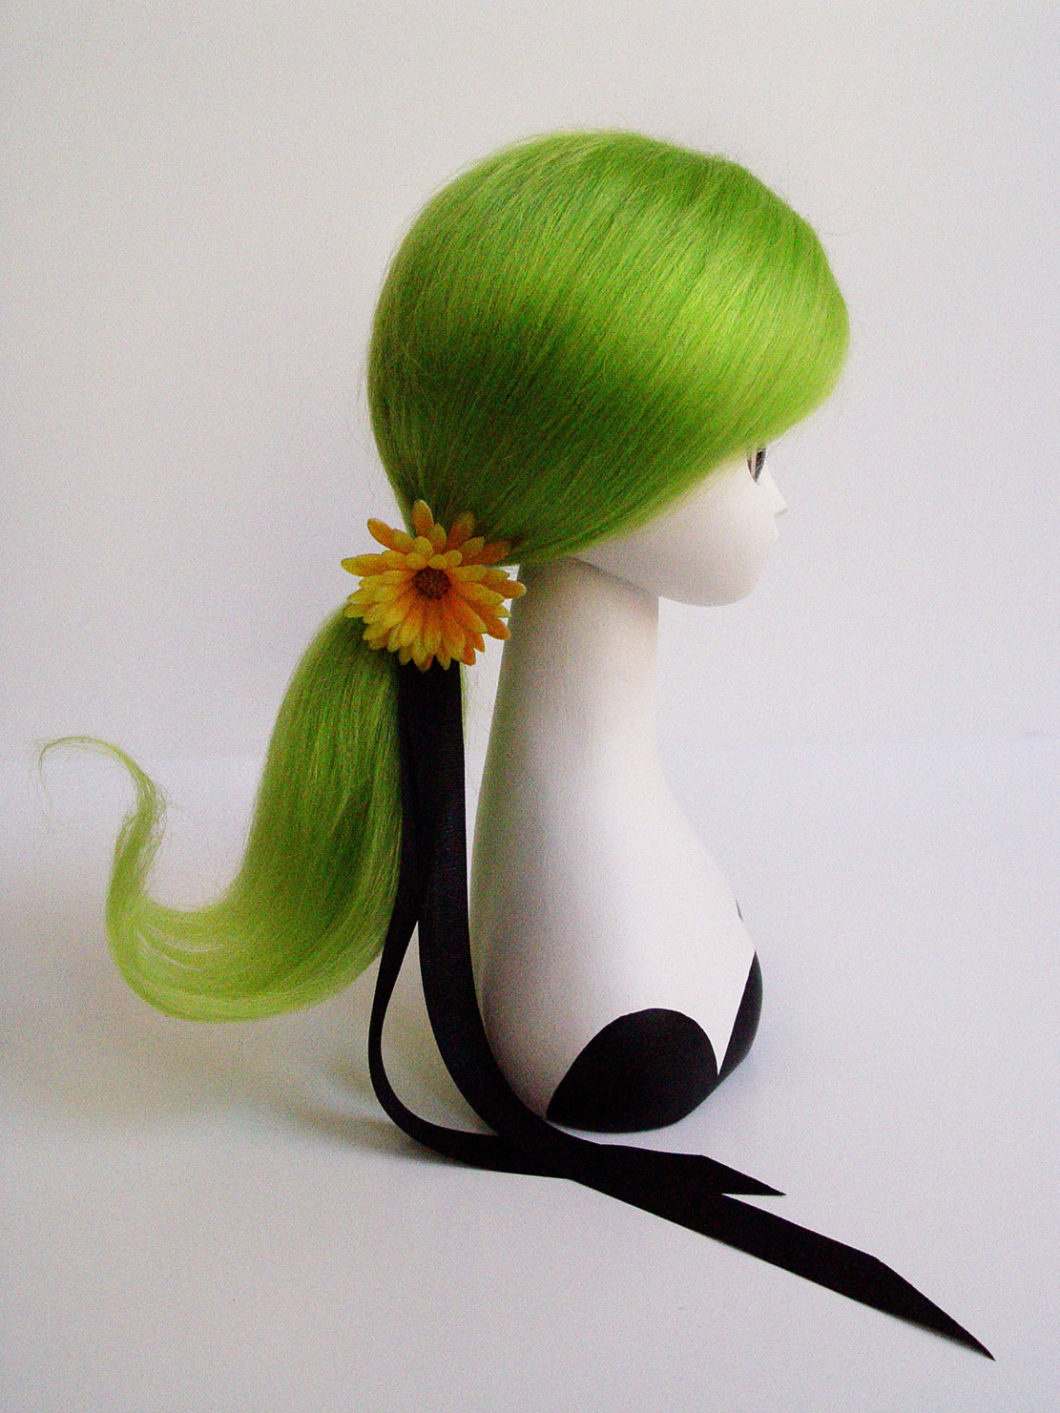 blythe kenner mohair wig hair alpaca aiai chan vintage doll japan yatabazah